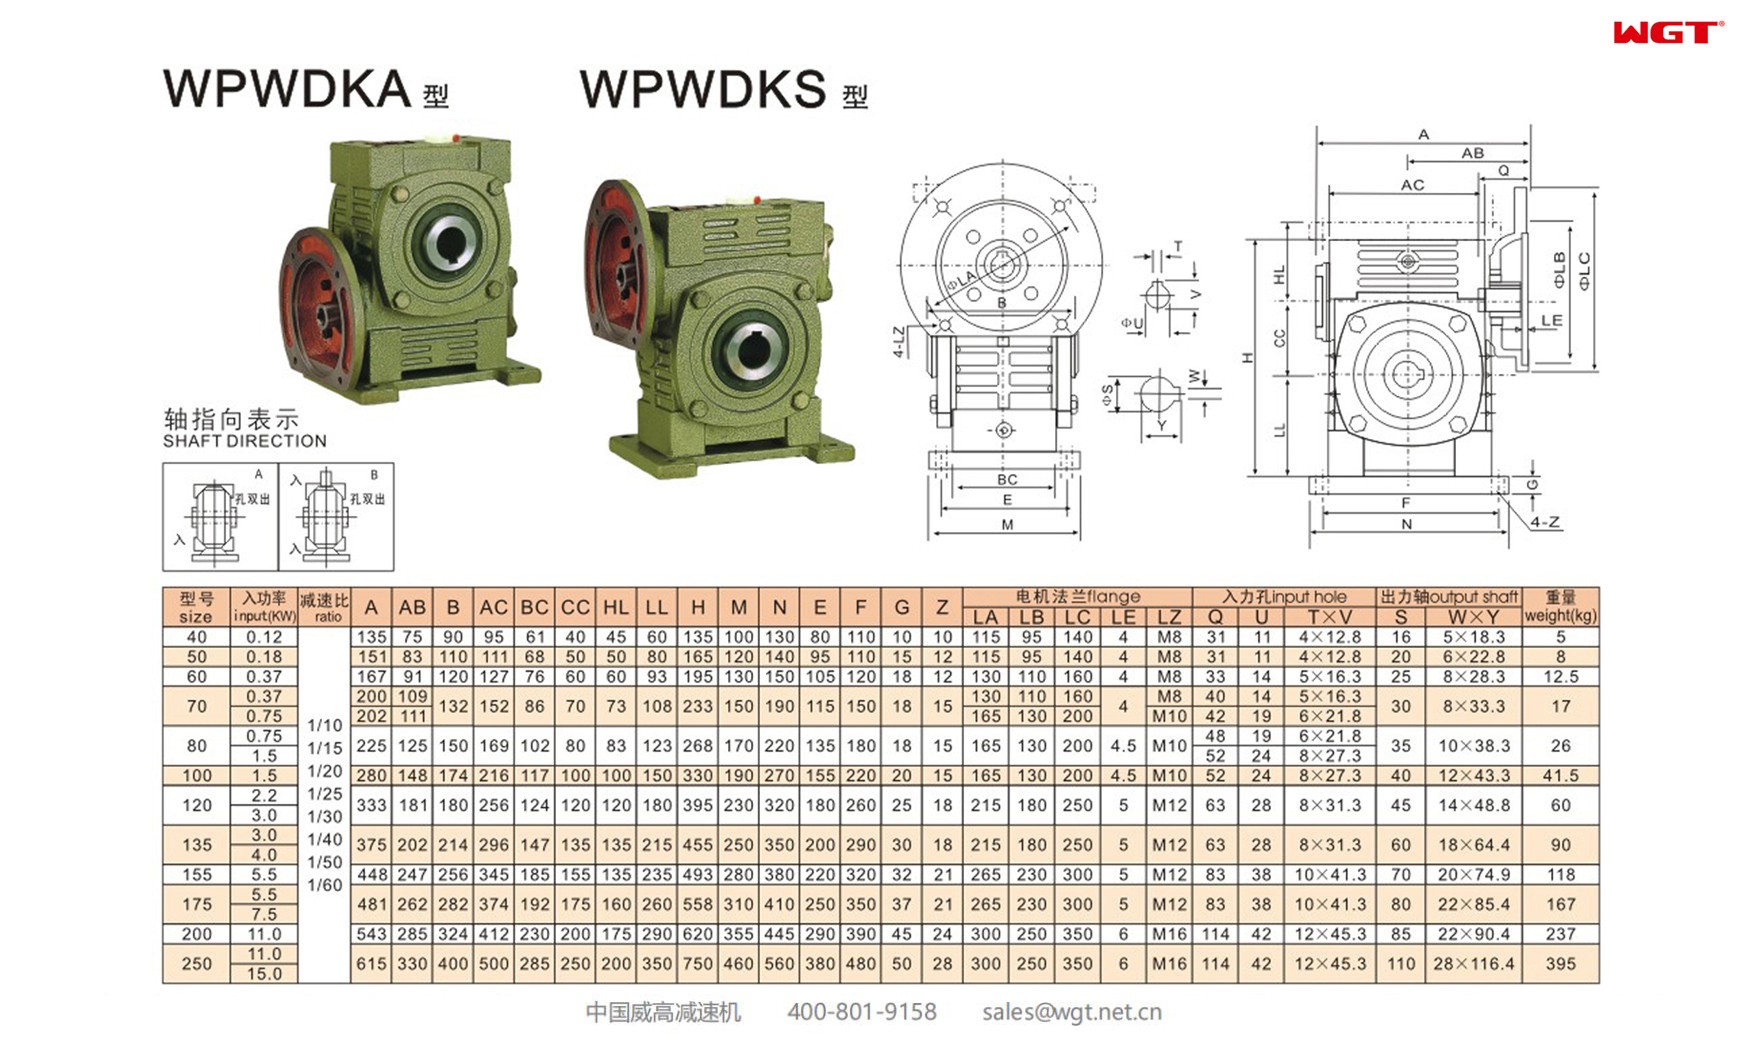 WPWDKA40 worm gear reducer universal speed reducer 